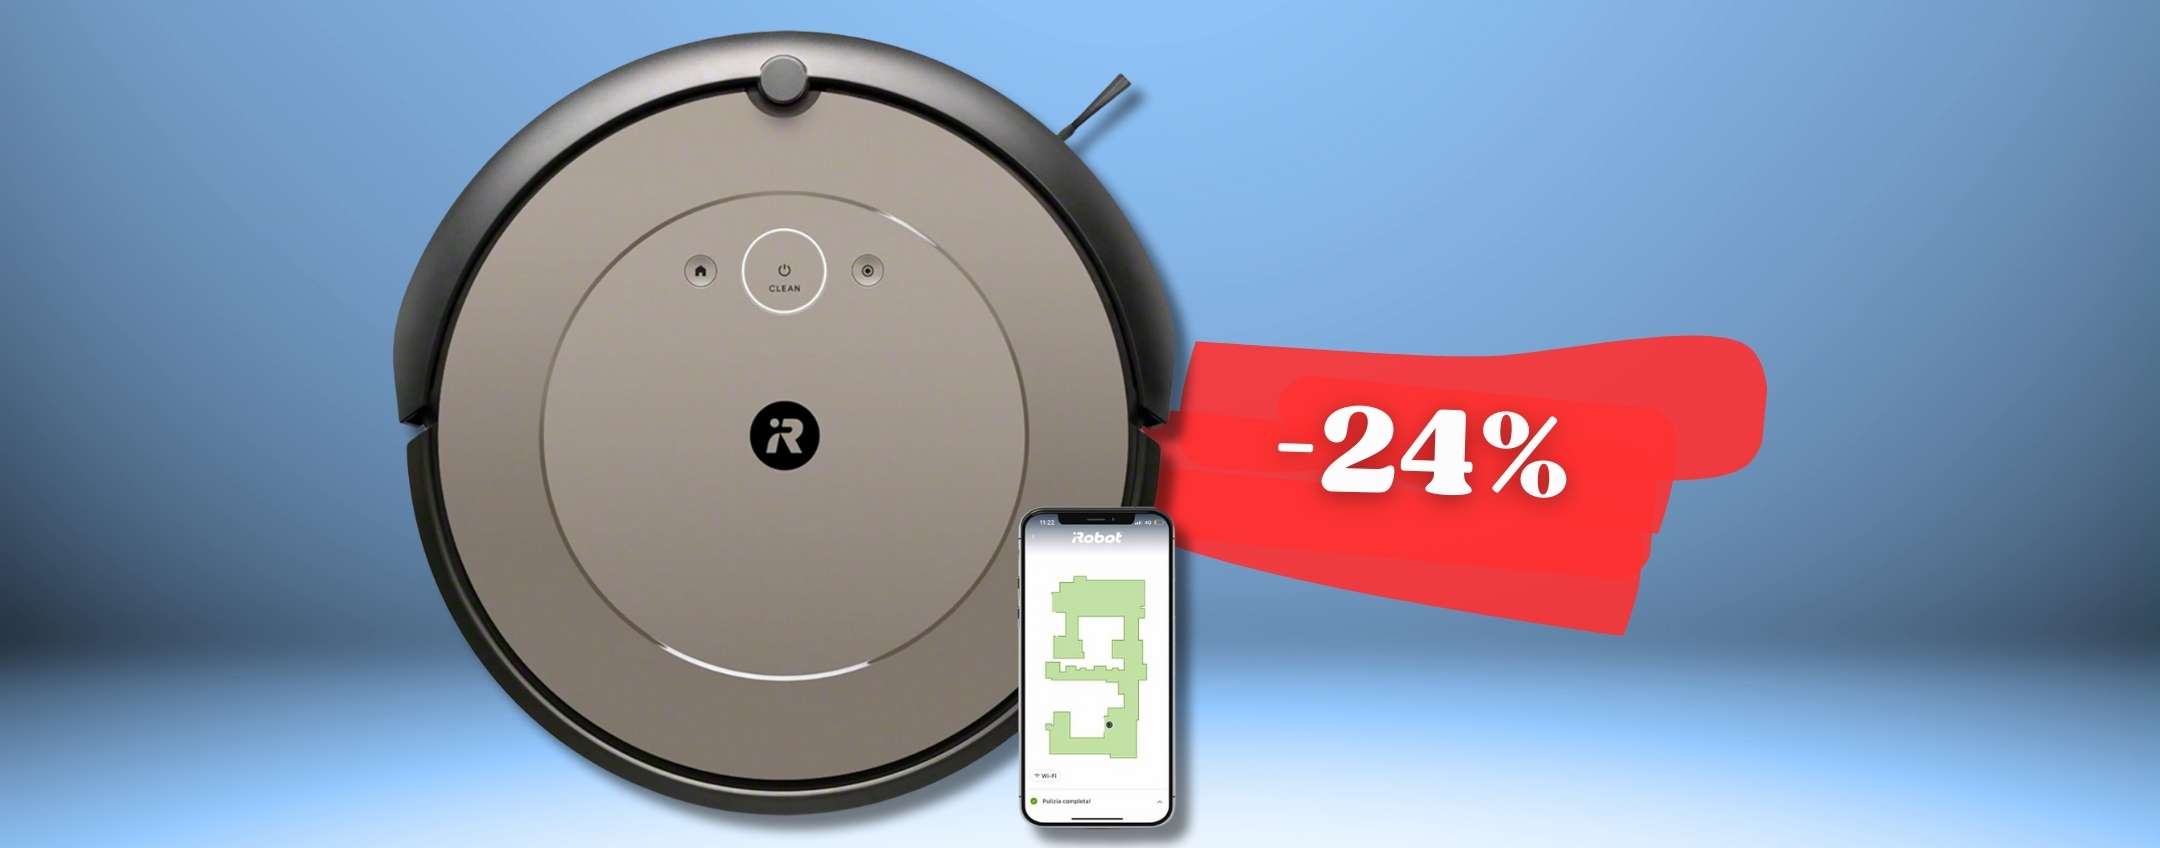 iRobot Roomba super CONNESSO per pulizia smart della tua casa (-24%)